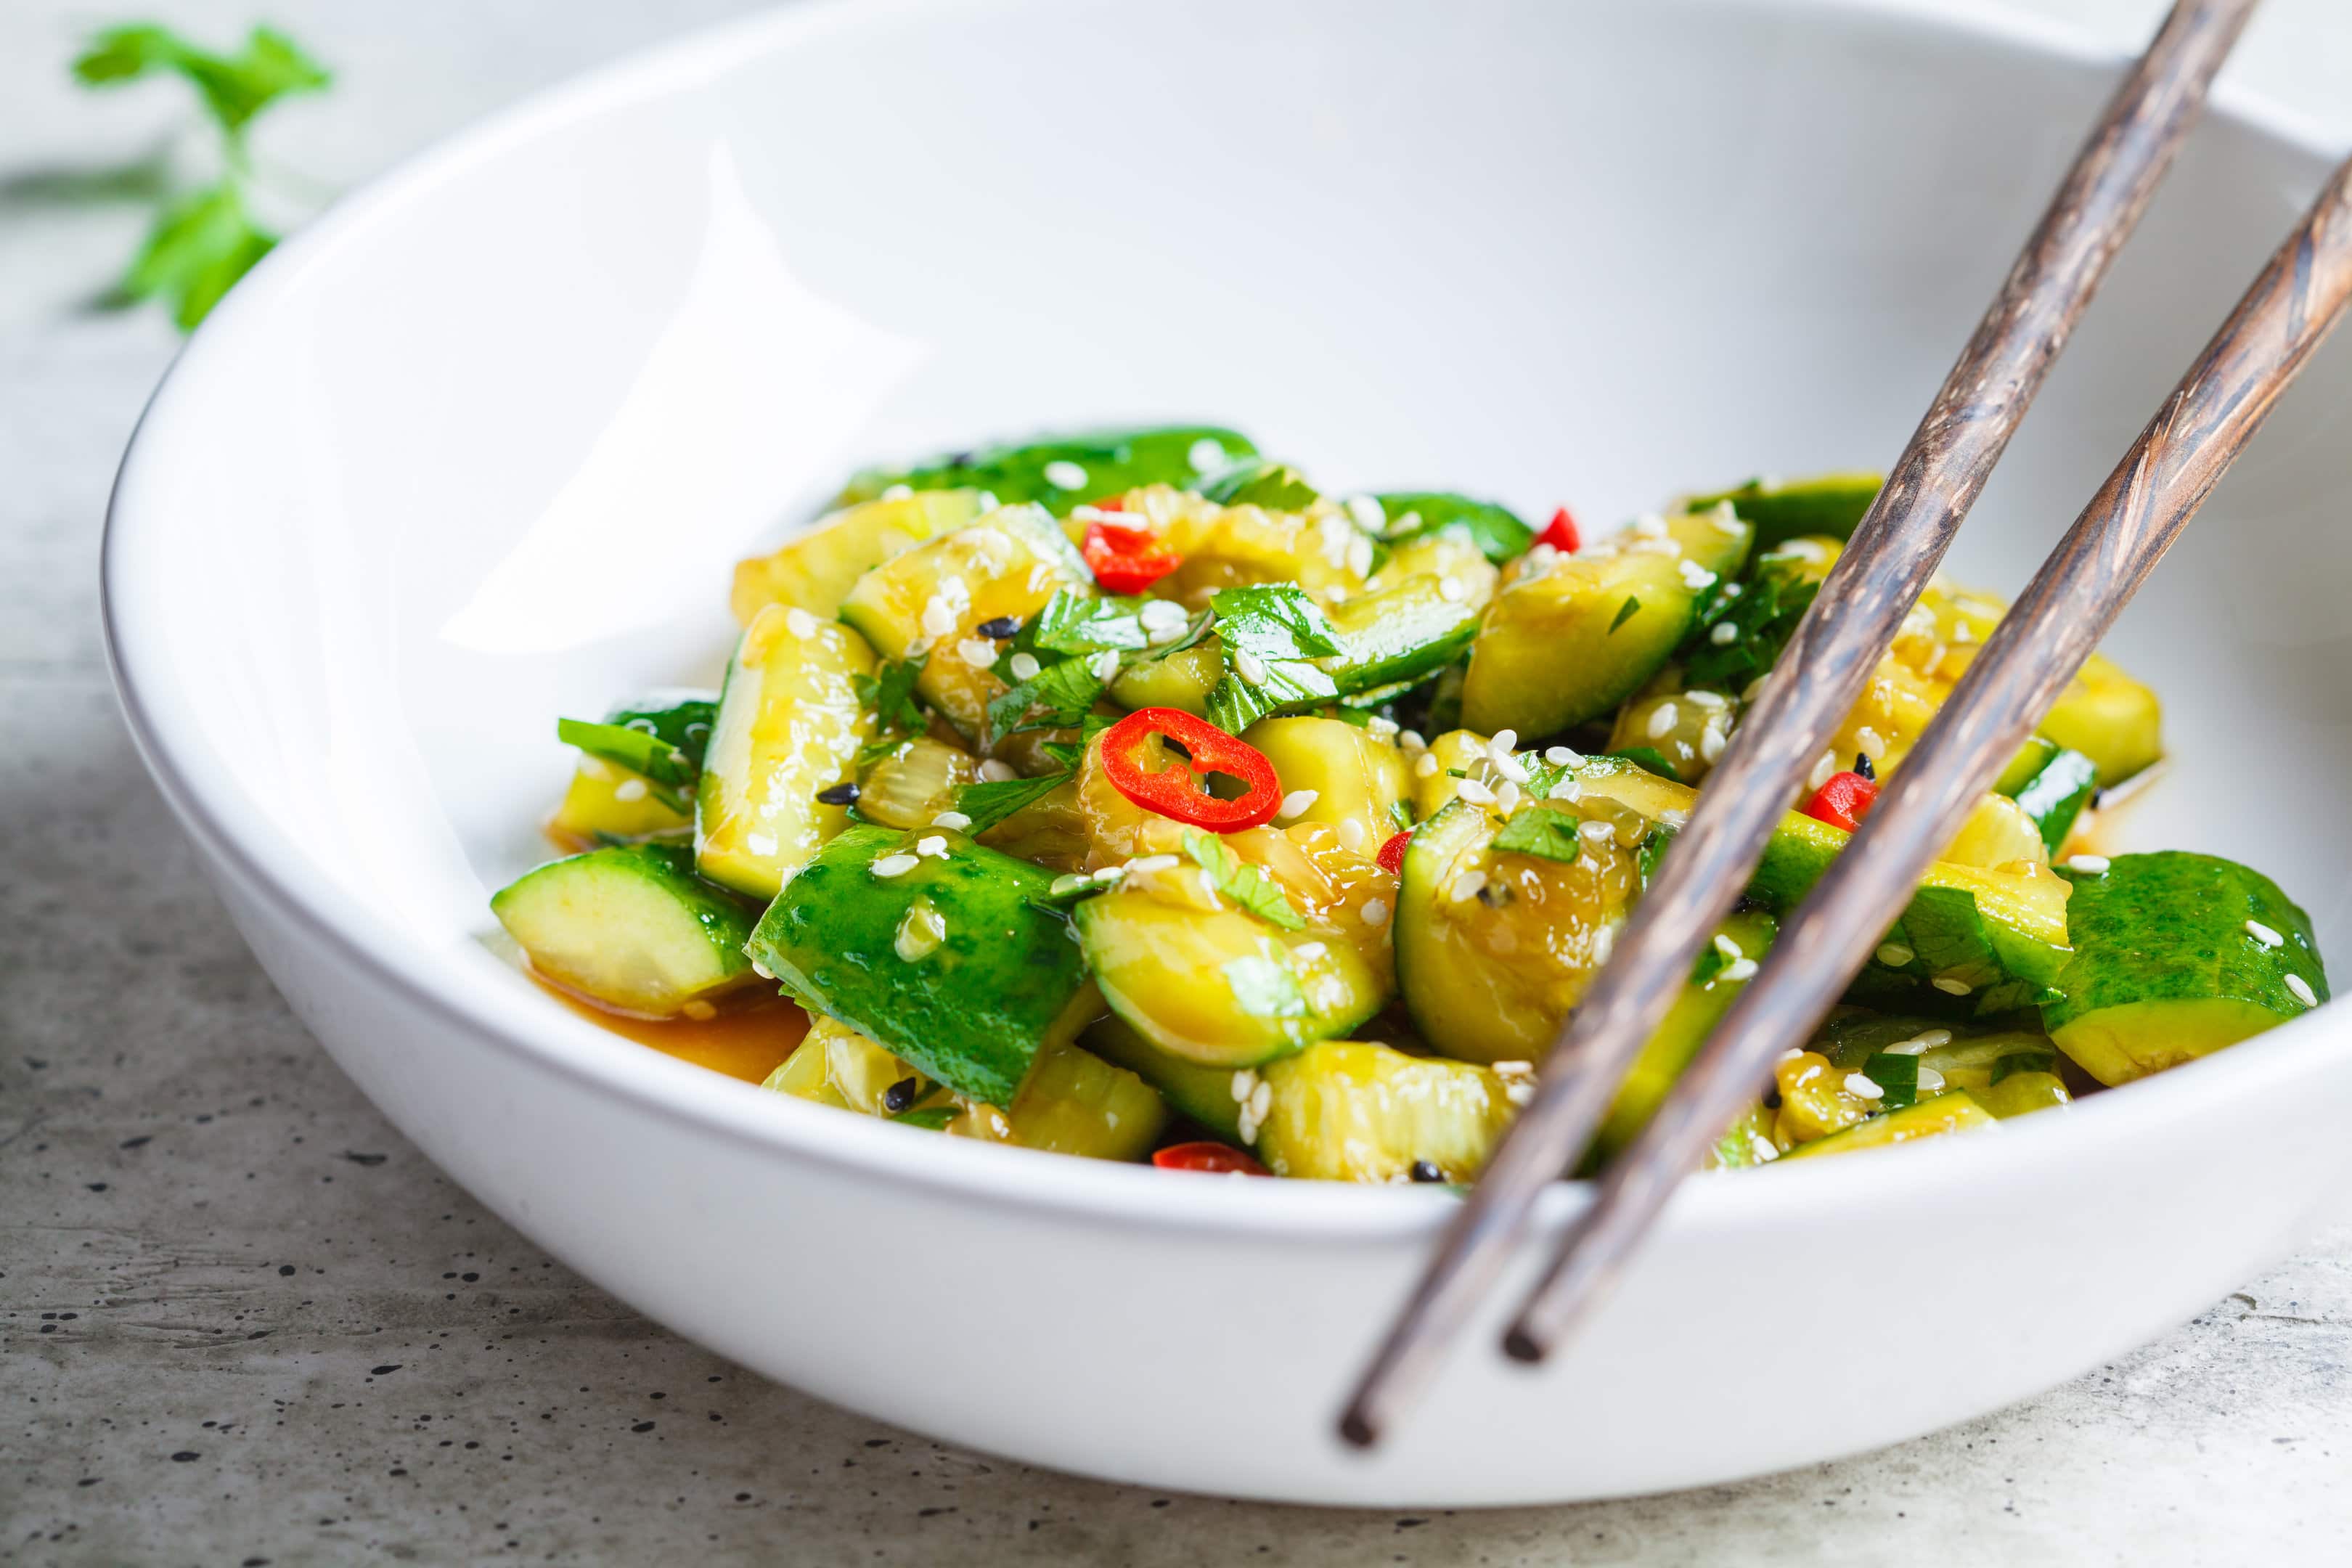 Asian Din Tai Fung cucumber salad